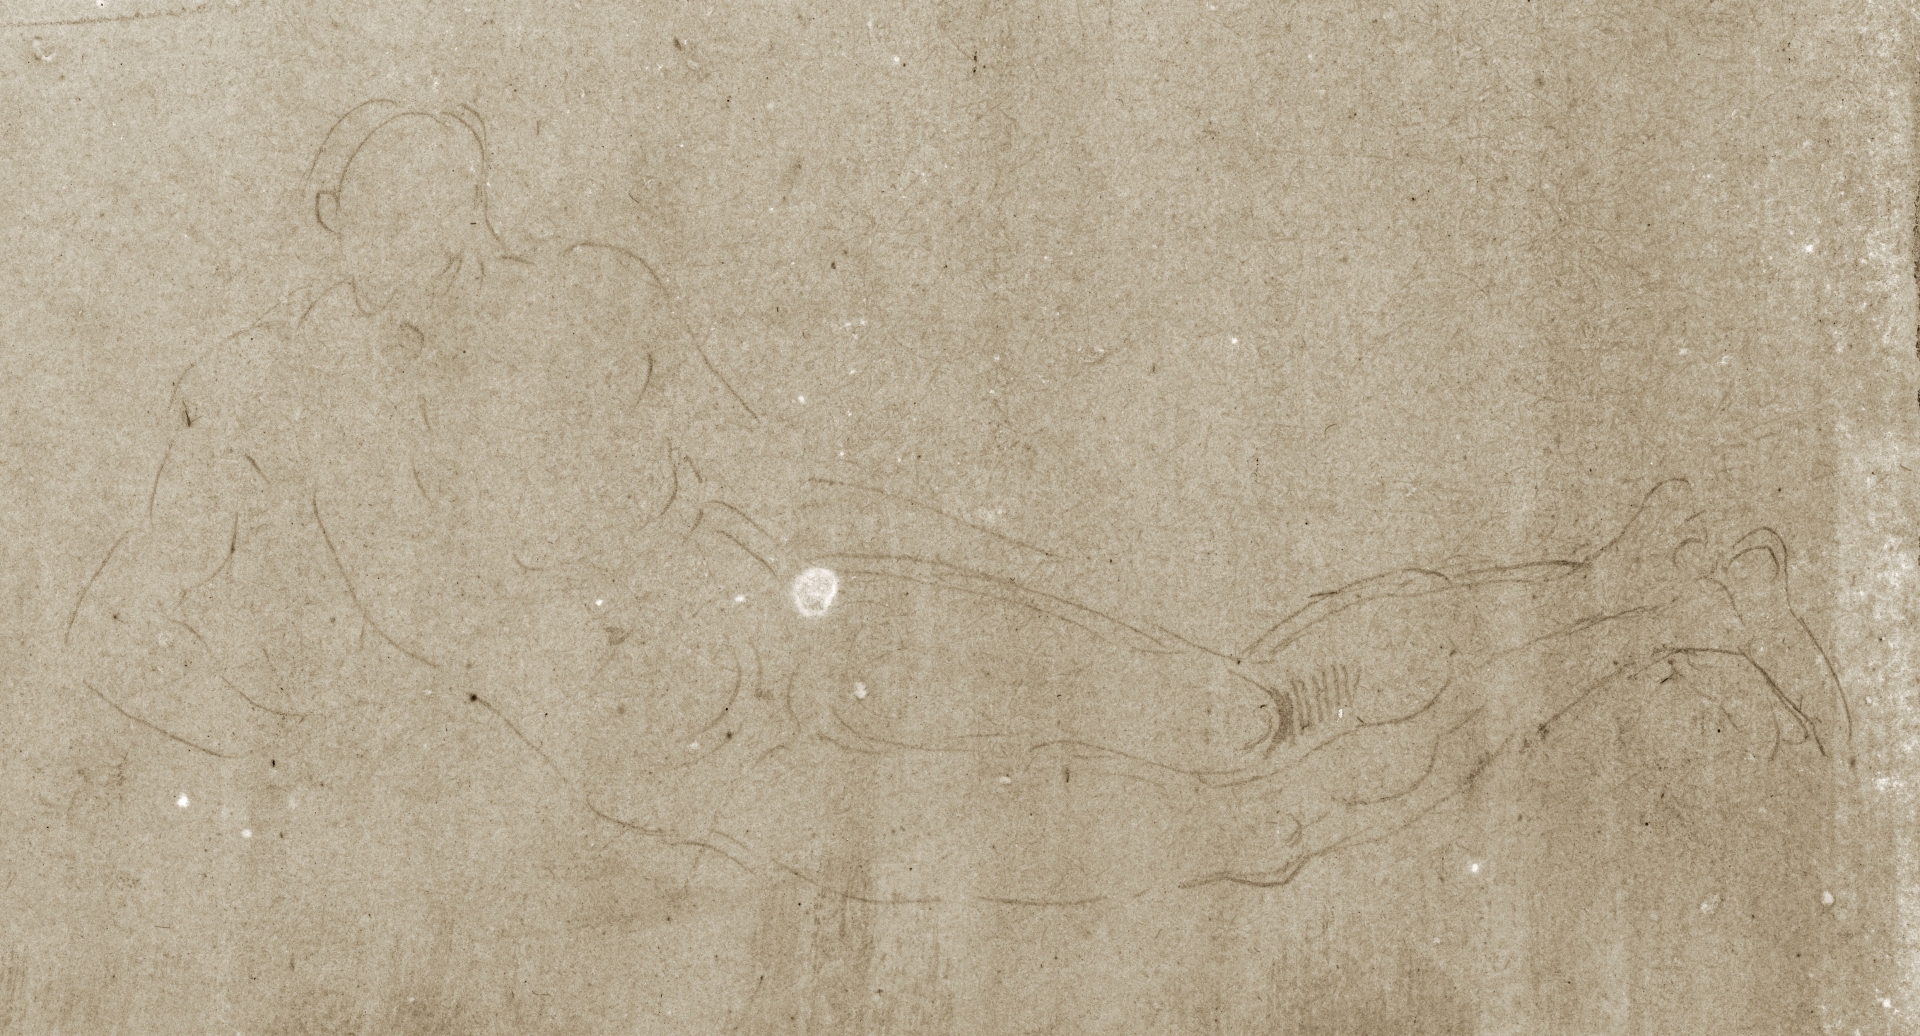 Abbildung einer Zeichnung aus dem Karlsruher Skizzenbuch des Renaissance-Künstlers Hans Baldung Grien. Zu sehen ist die Skizze eines liegenden Mannes.